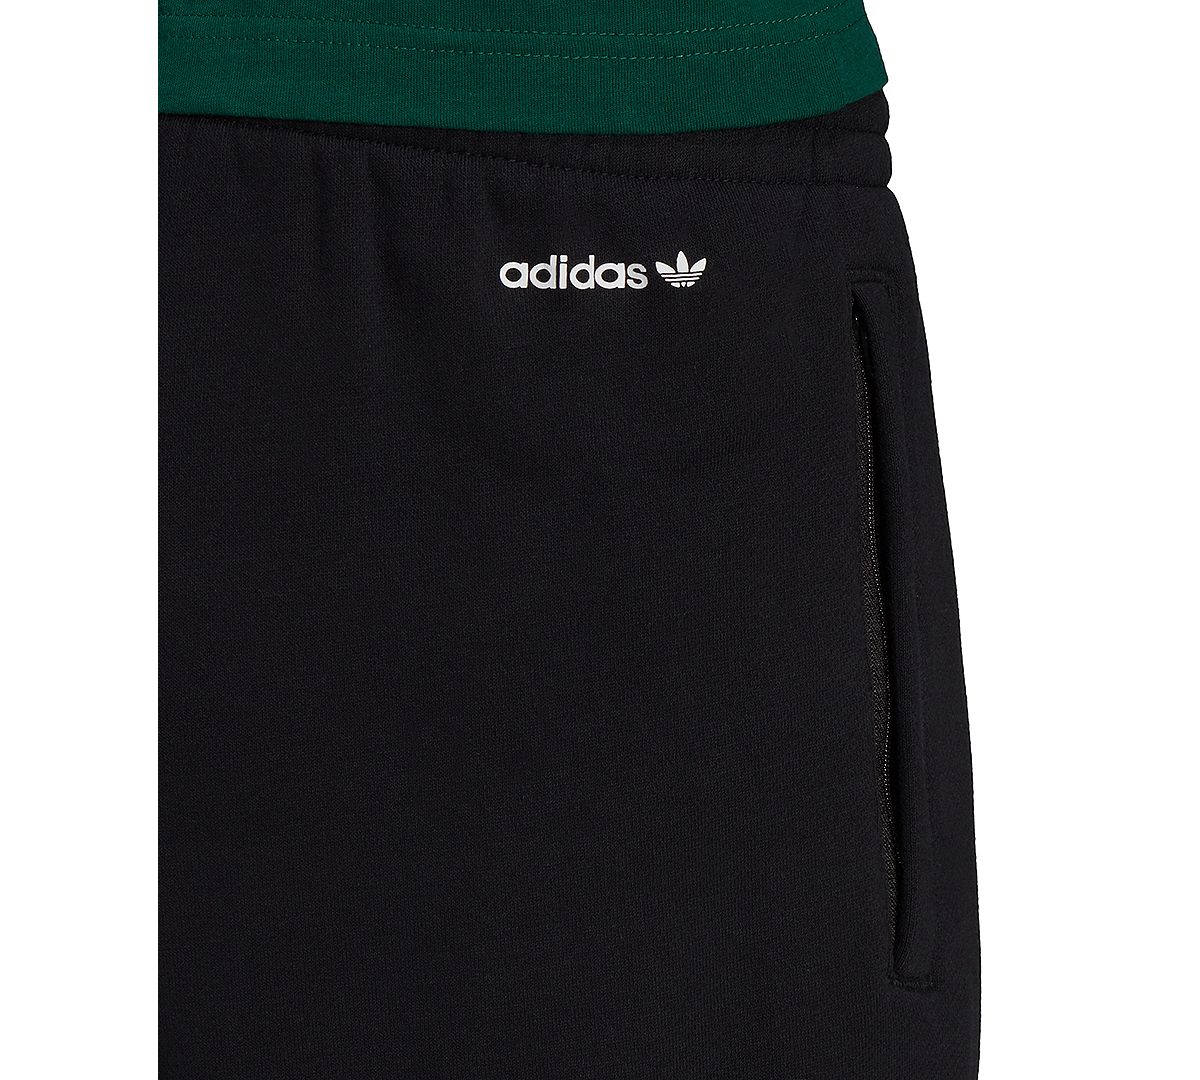 Adidas Shattered Trefoil Sweatpants Black/multi